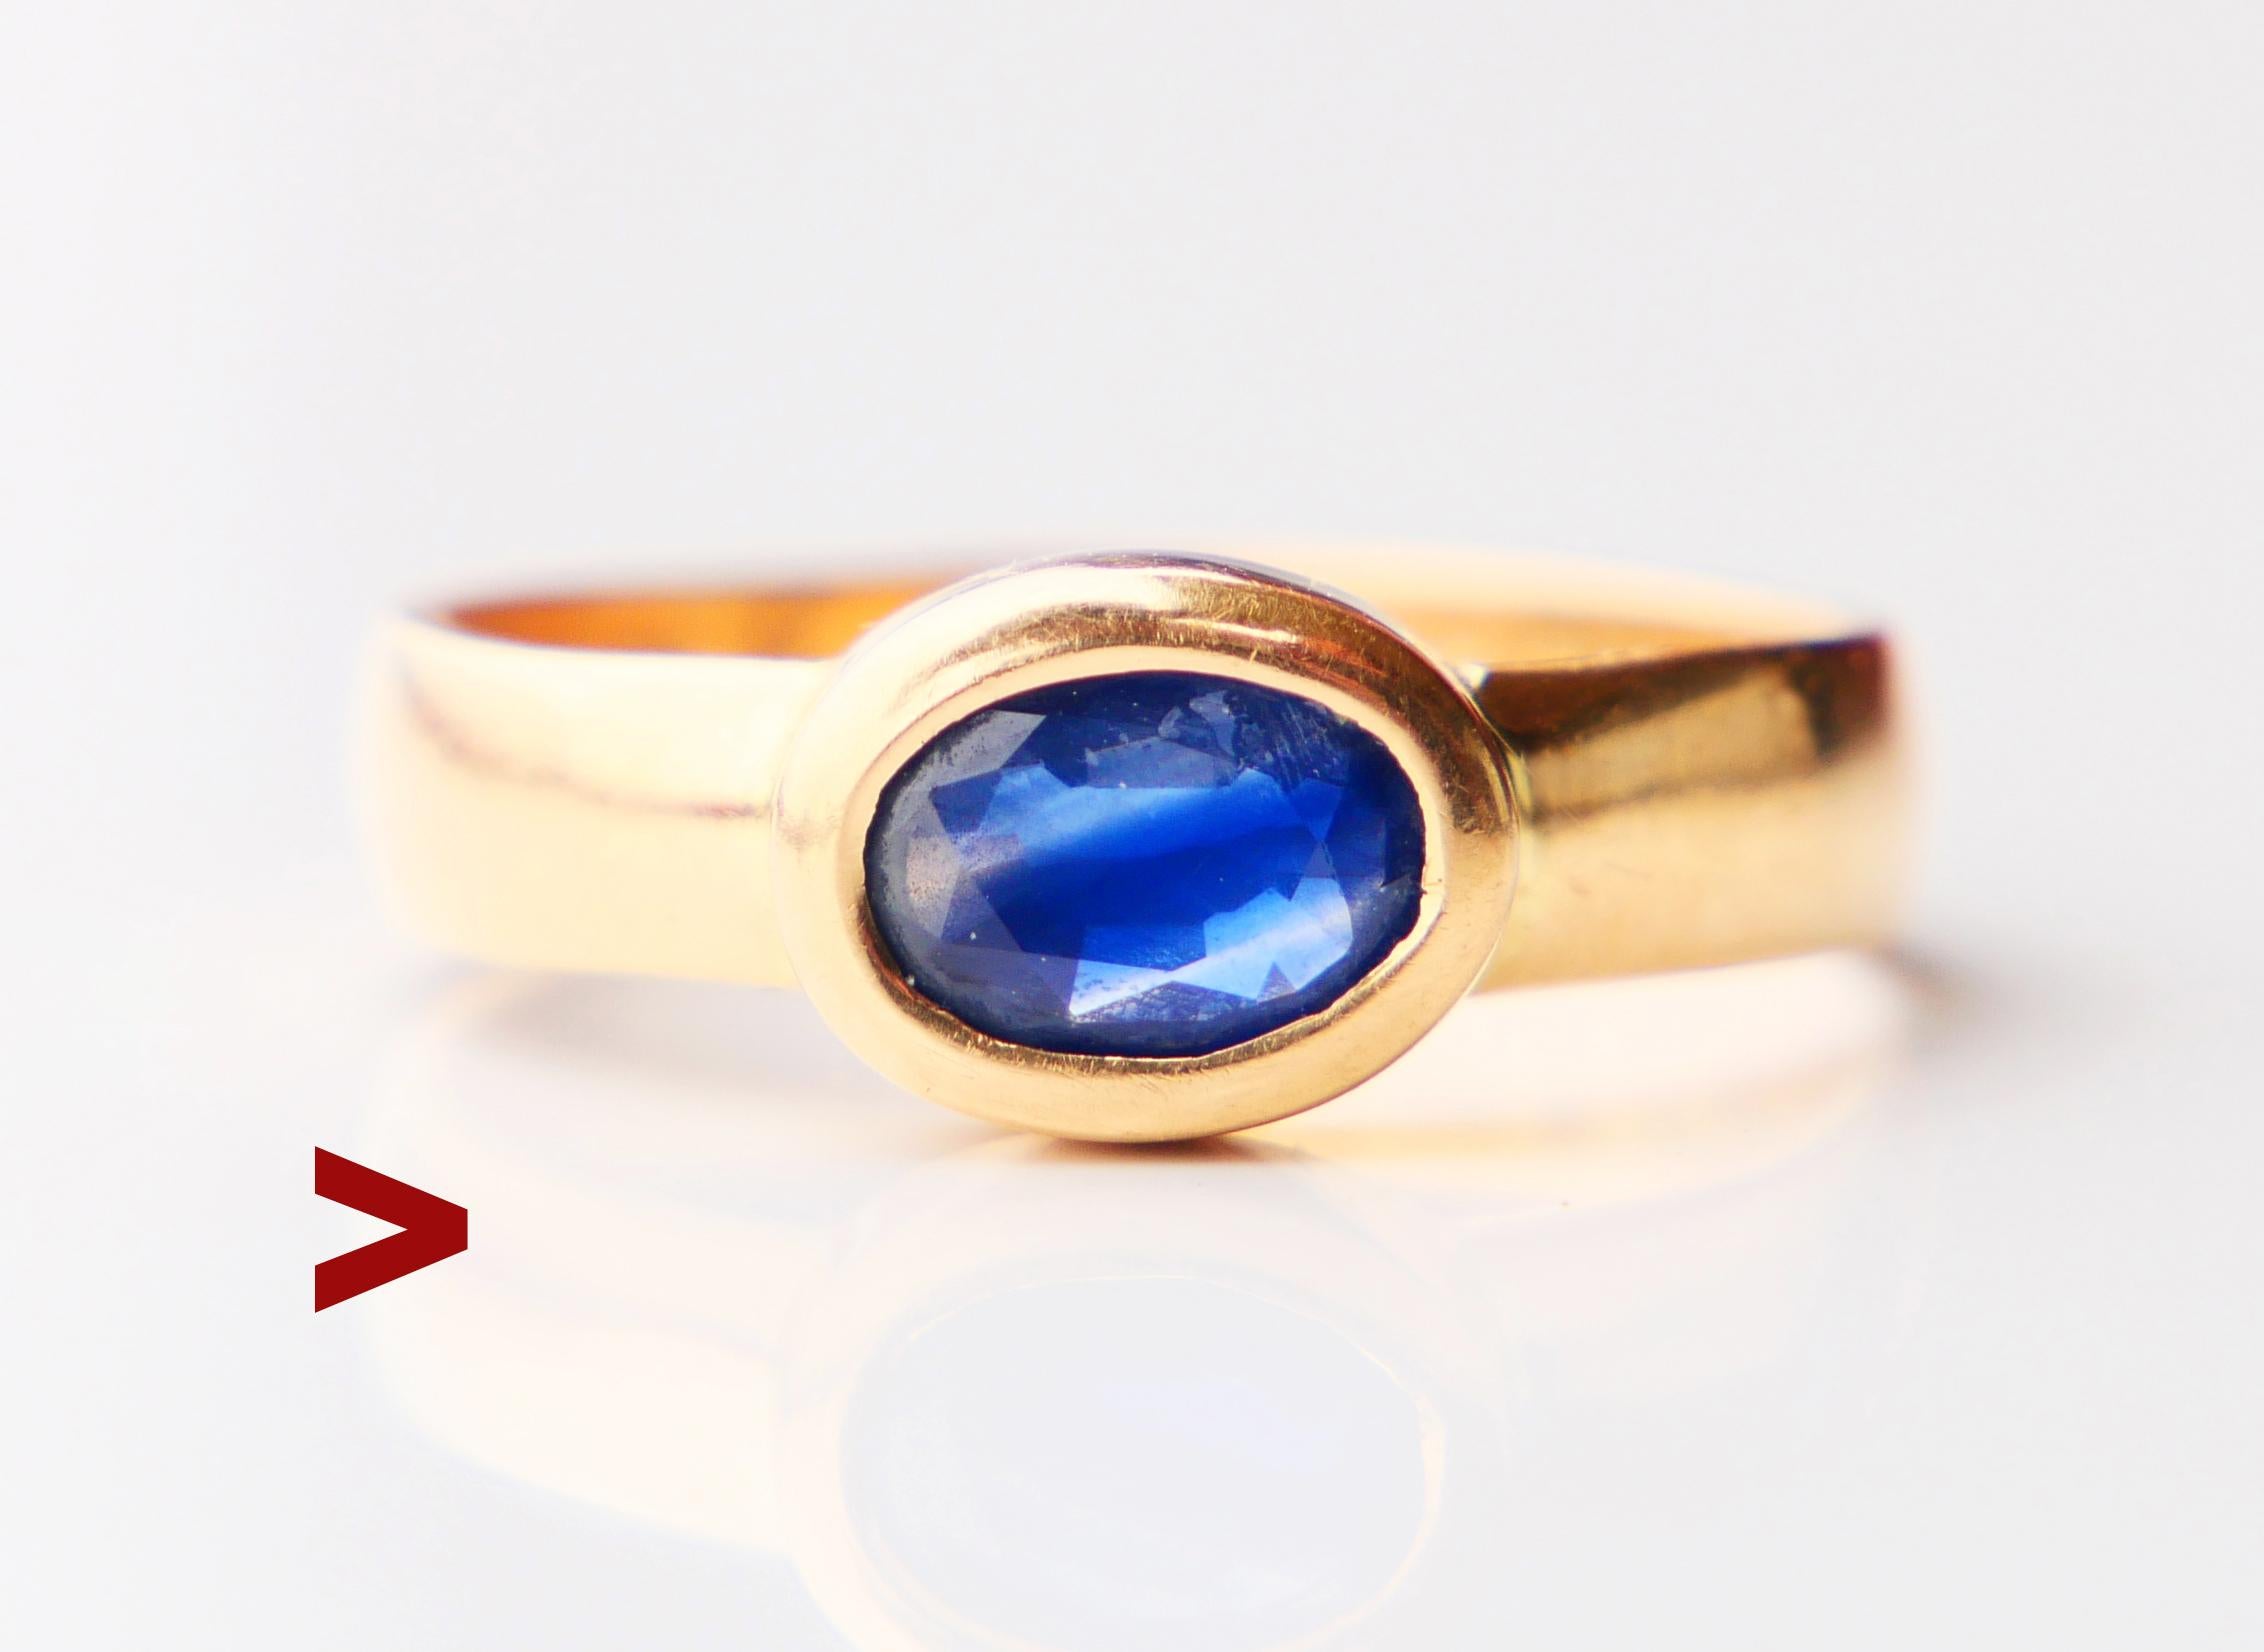 Unisex-Ring für jeden Tag aus massivem 18-karätigem Gelbgold, verziert mit einem spektakulären blauen Saphir von mittlerer blauer Farbe, ovaler Diamantschliff 8 mm x 6 mm x 2,2 mm / ca. 1,55 ct. Der Stein weist eine für Natursteine typische innere